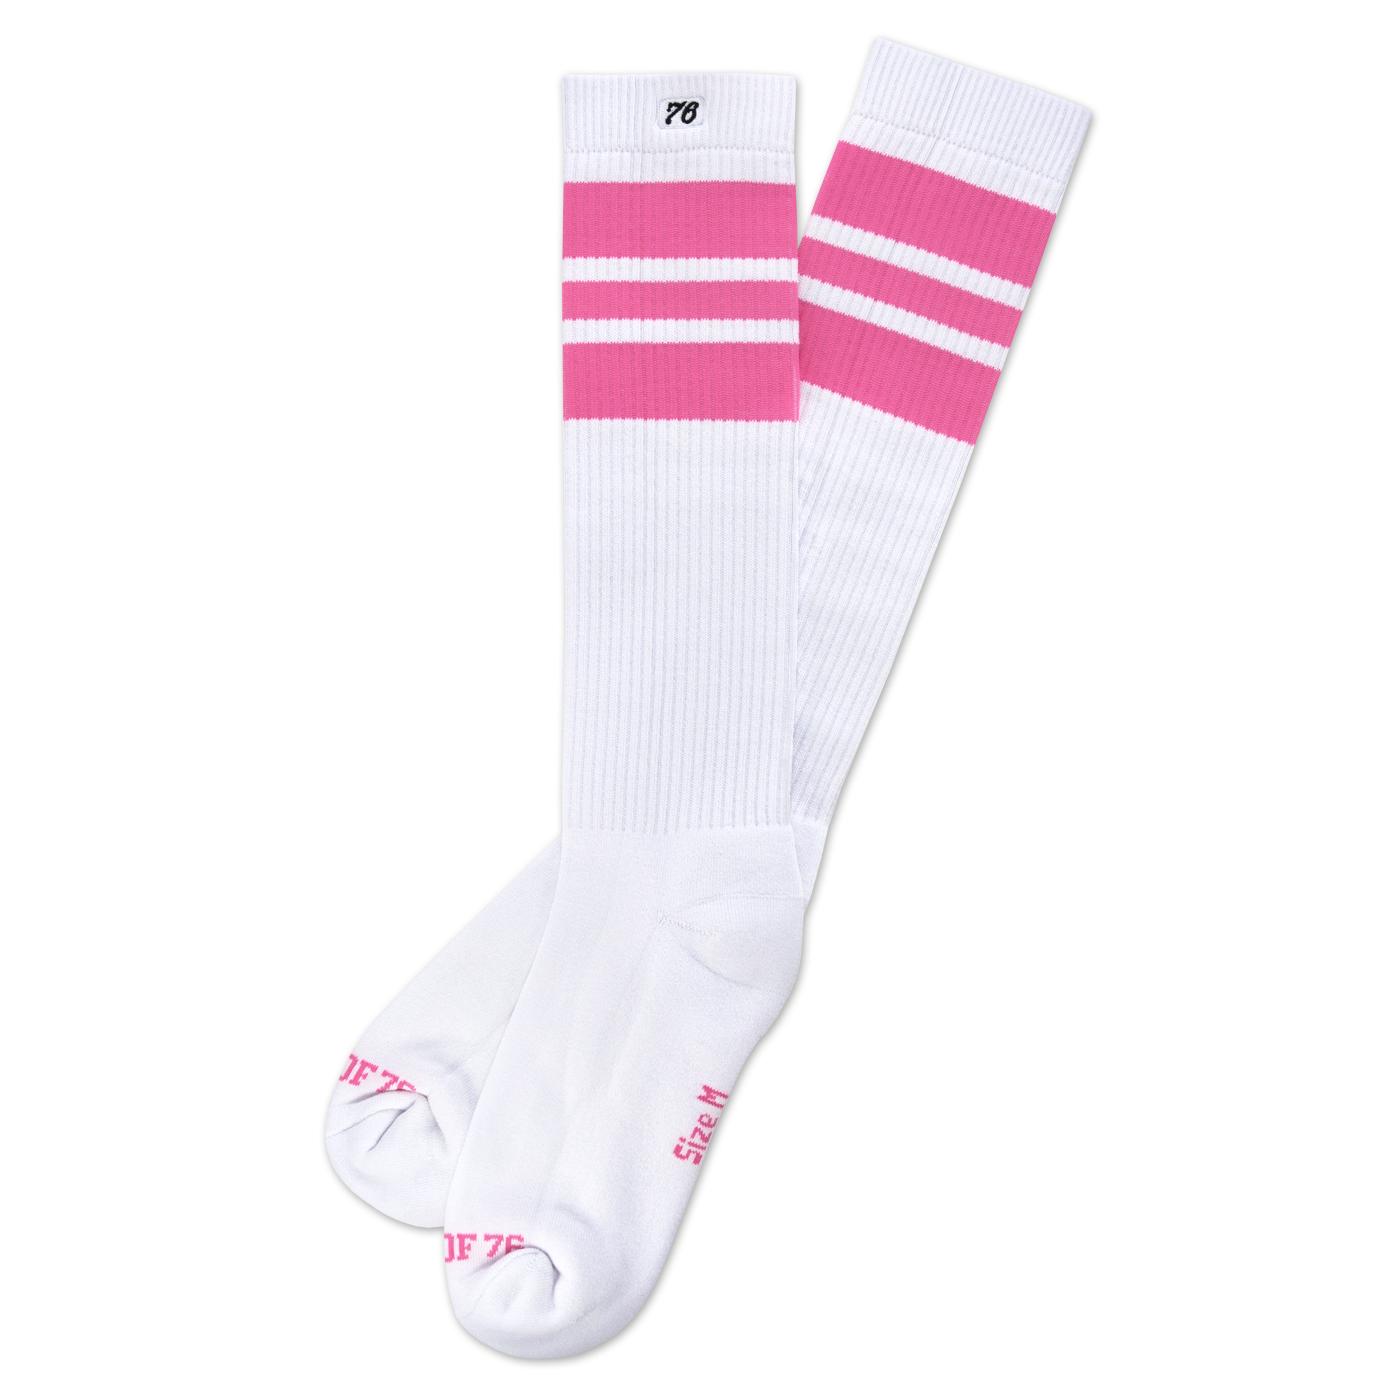 So76 the pink Pinks on white Skater-Socks Hi